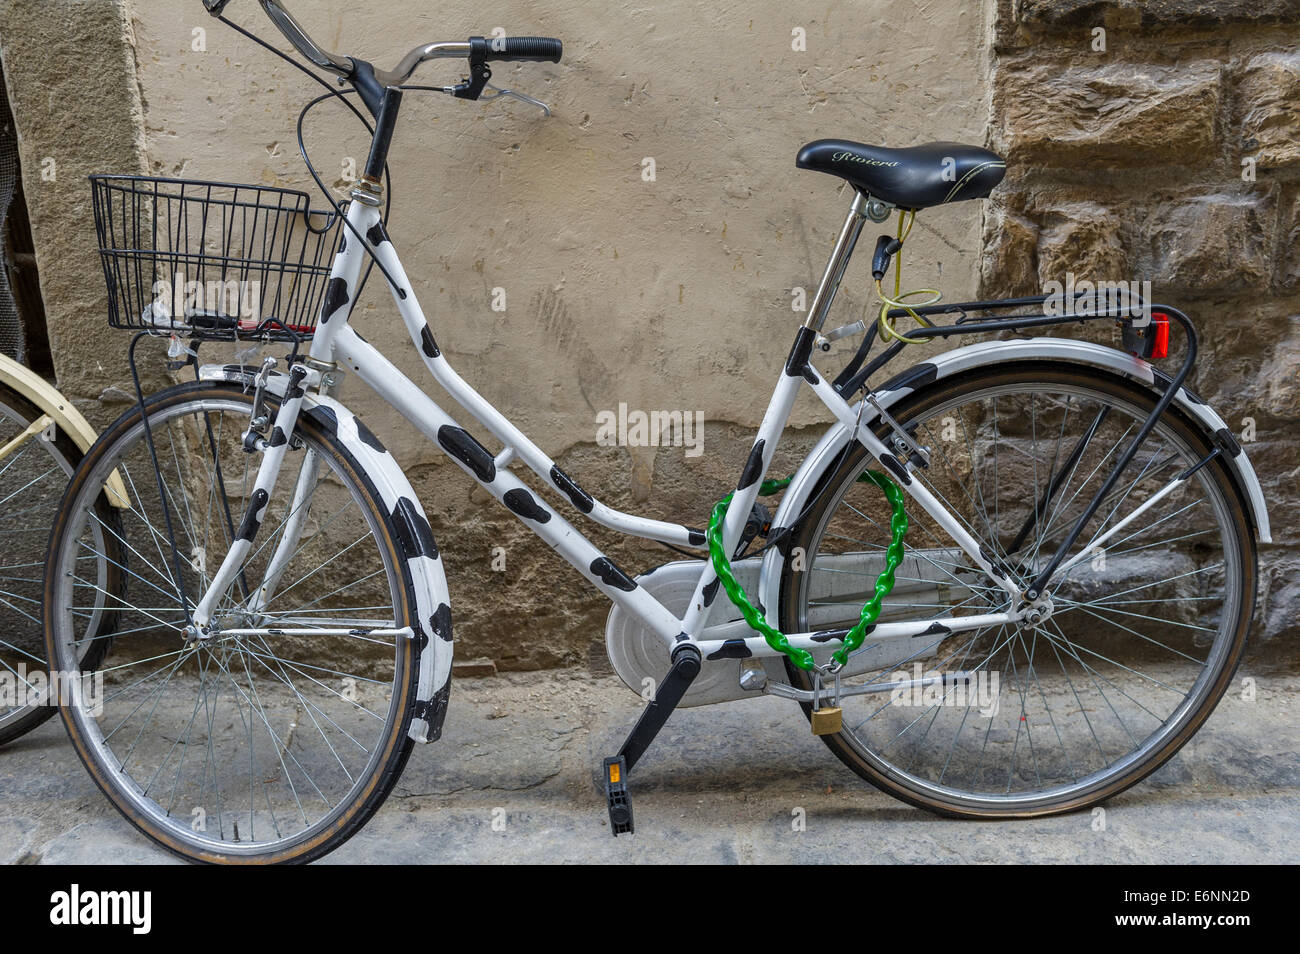 L'article cycle noir et blanc avec des cadenas de vélo vert. Banque D'Images